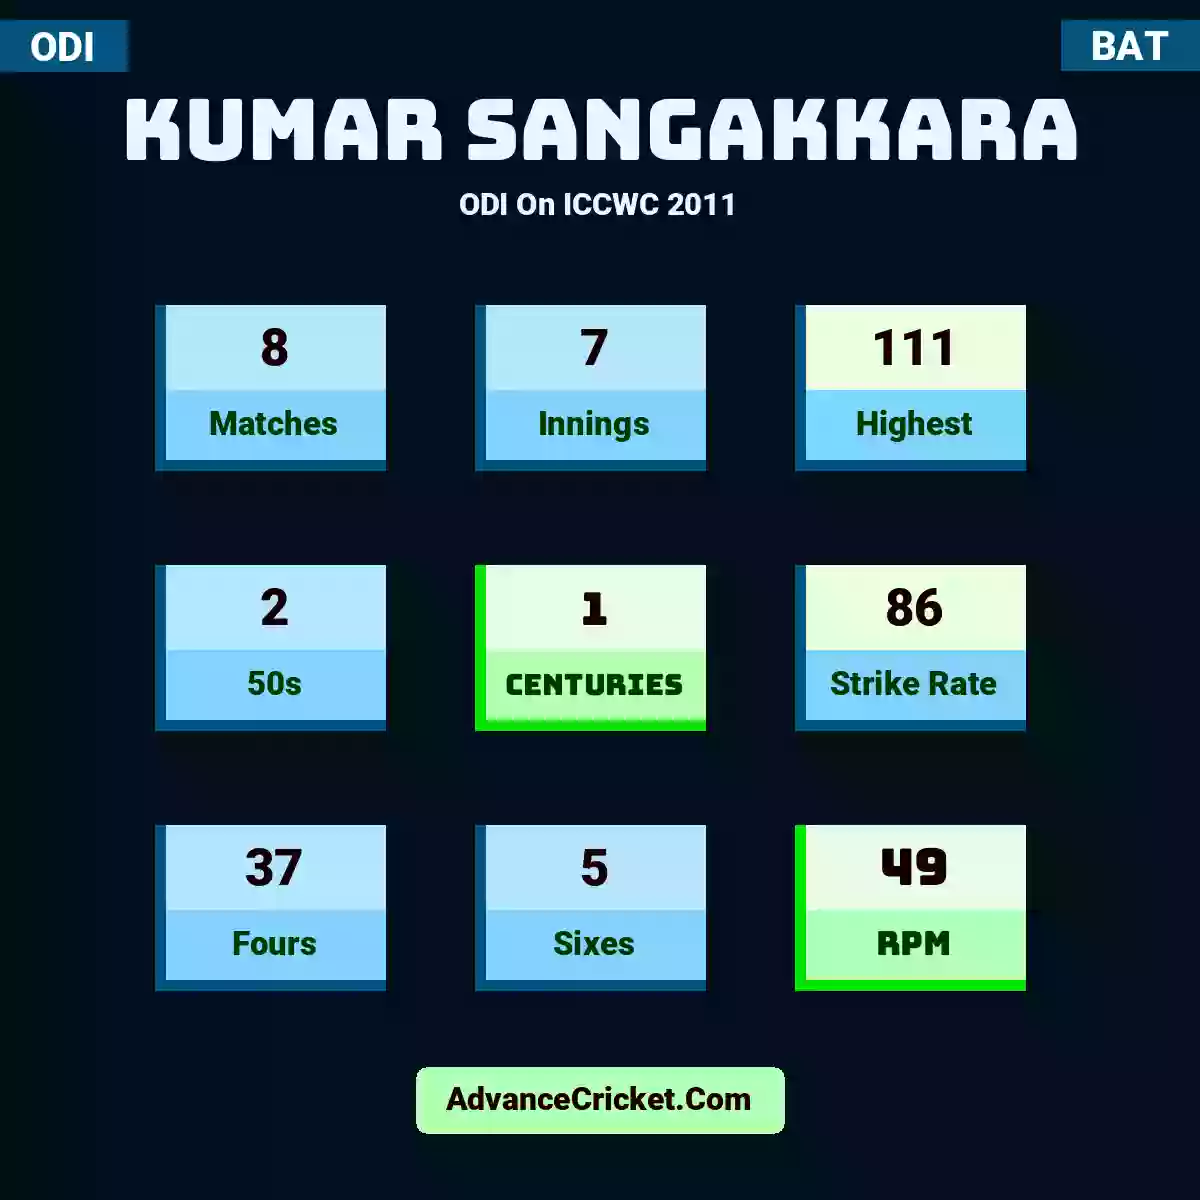 Kumar Sangakkara ODI  On ICCWC 2011, Kumar Sangakkara played 8 matches, scored 111 runs as highest, 2 half-centuries, and 1 centuries, with a strike rate of 86. K.Sangakkara hit 37 fours and 5 sixes, with an RPM of 49.